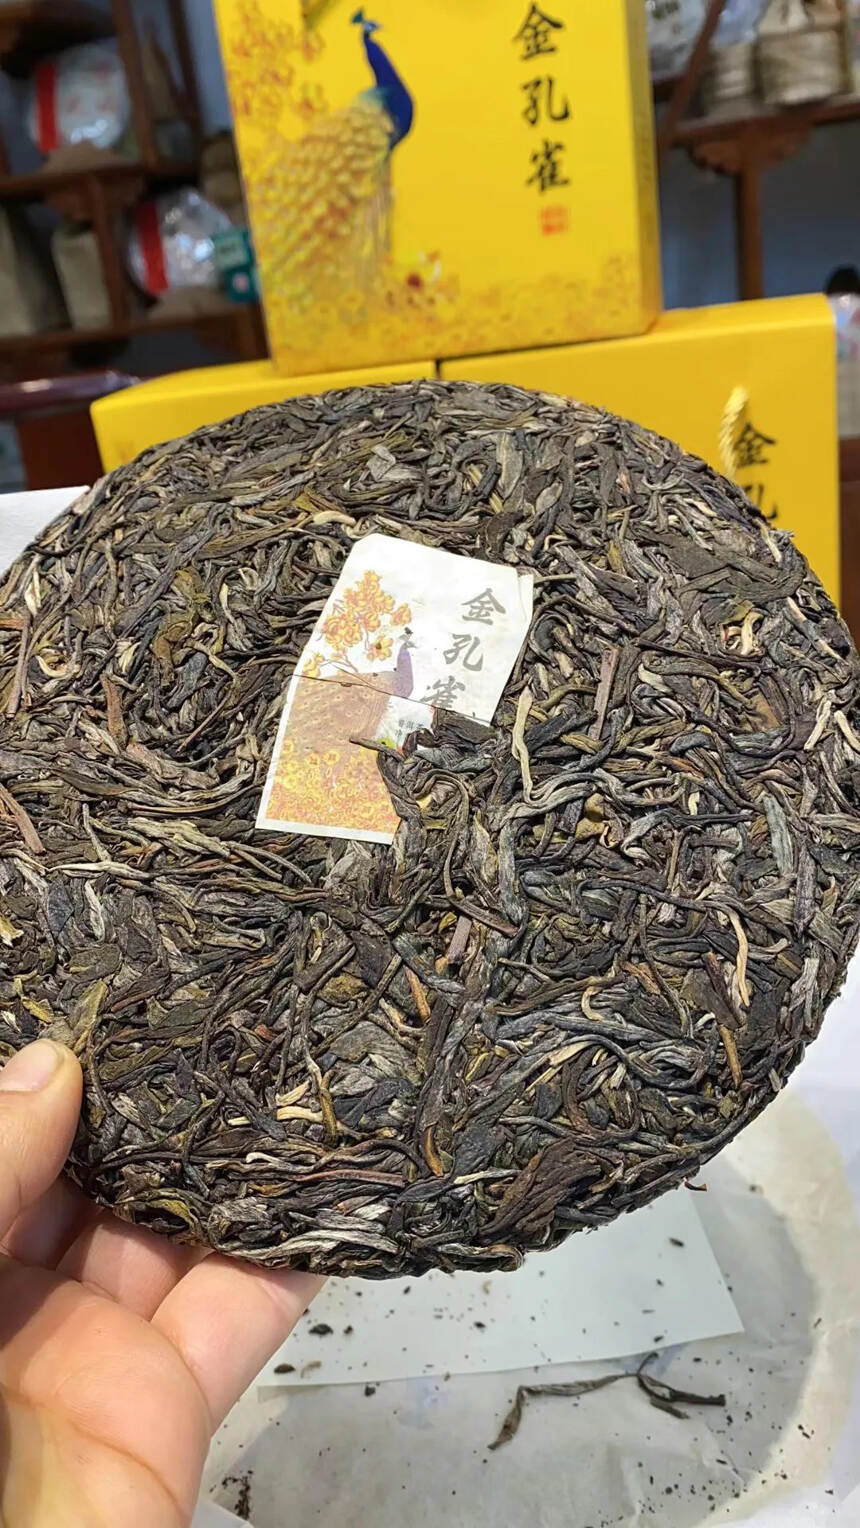 2020年金孔雀生茶 一饼一个礼盒
选用布朗山乔木茶